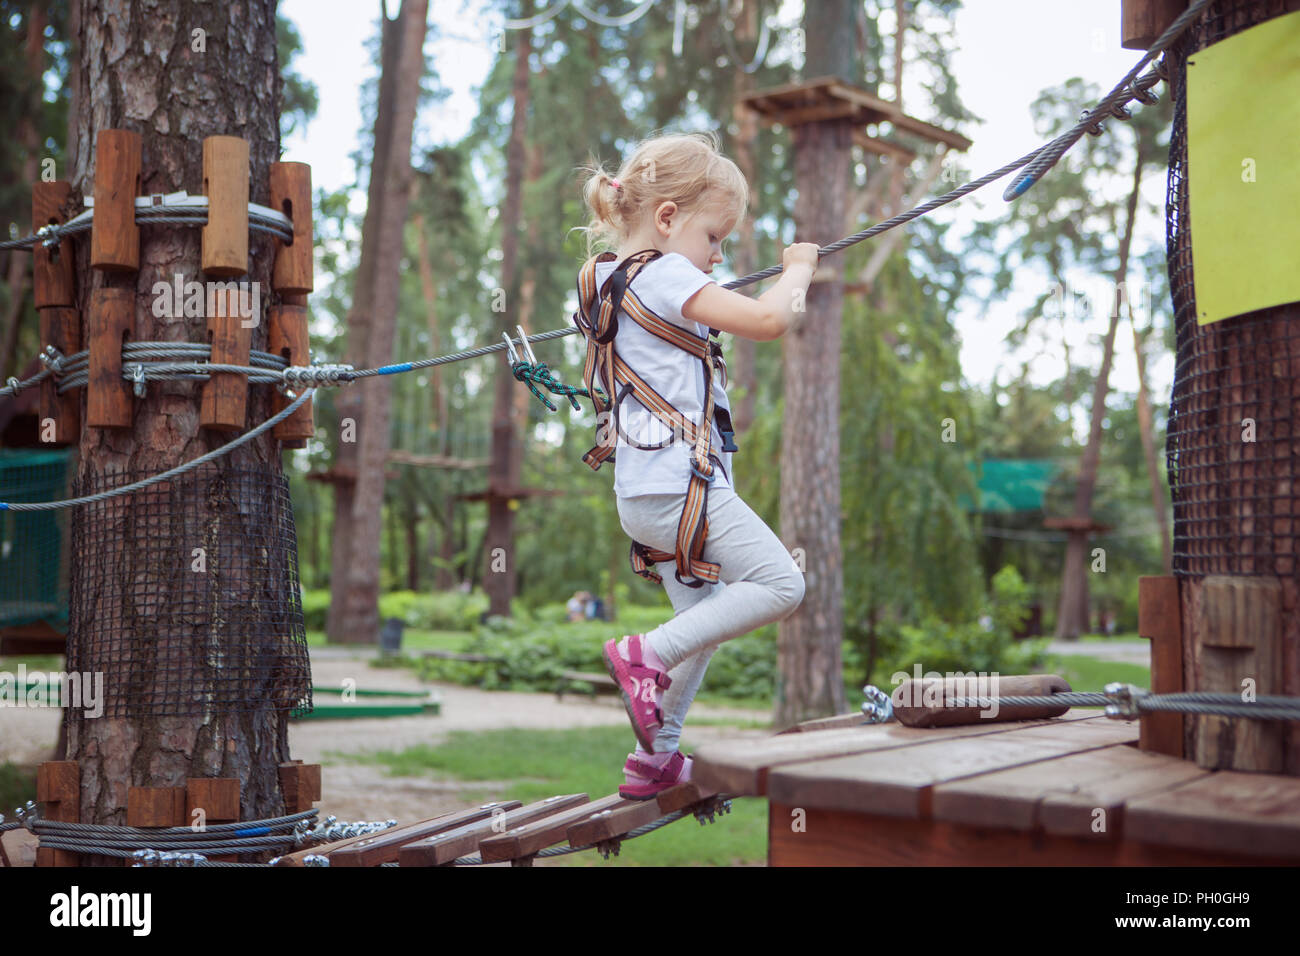 Aktive Erholung. Kleines Mädchen Spaß im Seilpark. Stockfoto